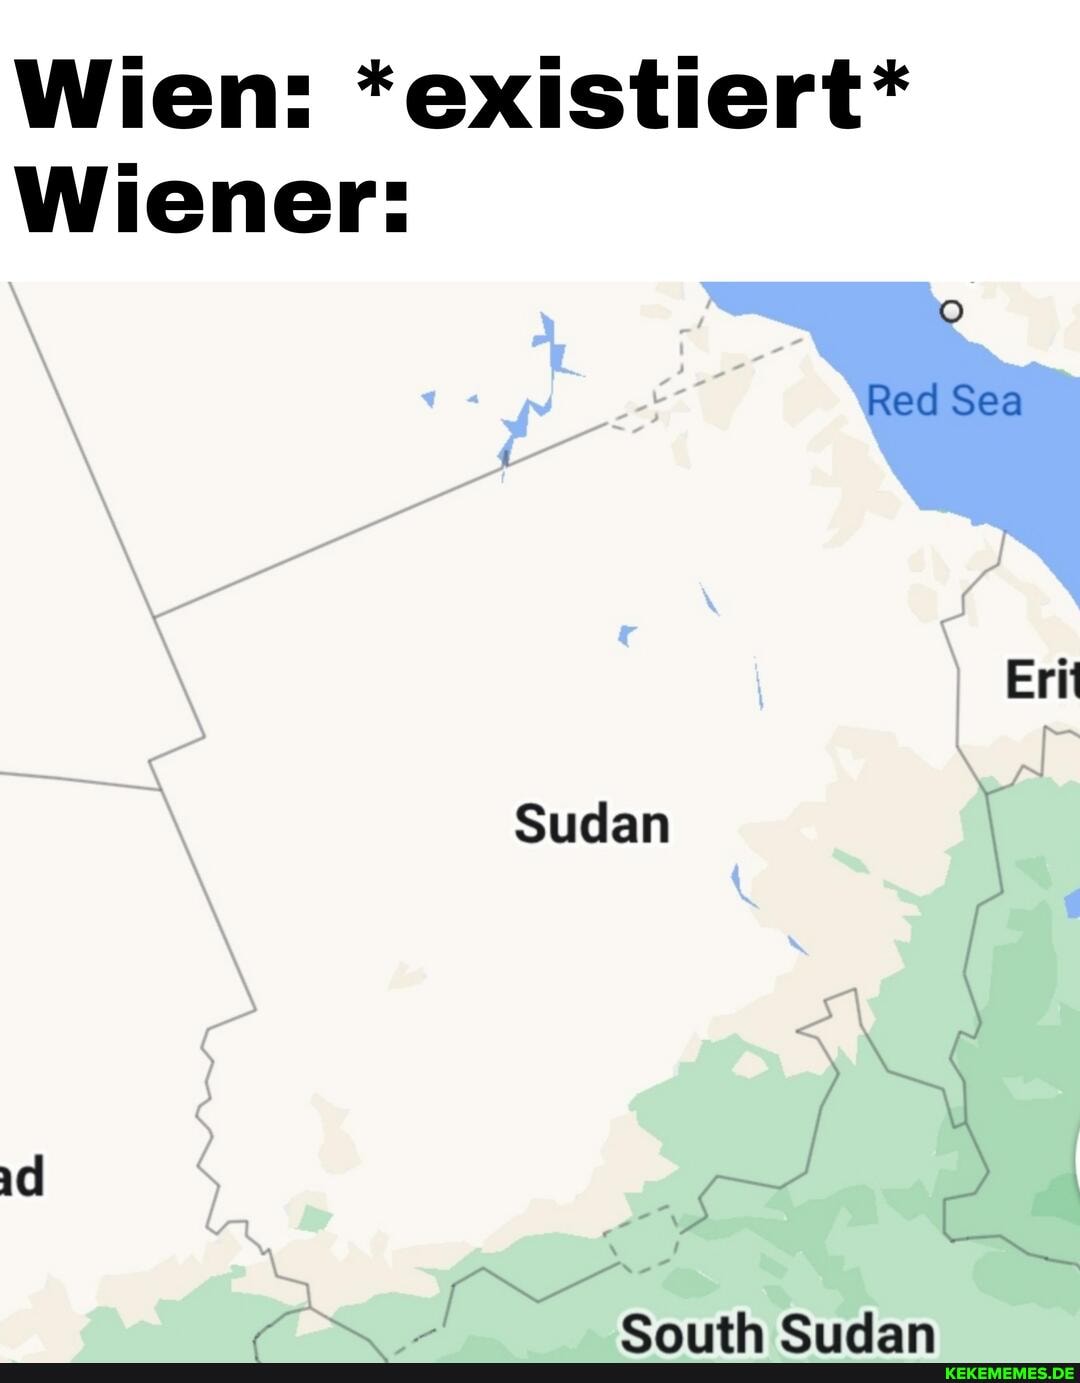 Wien: *existiert* Wiener: Red Sea Erit Sudan South Sudan